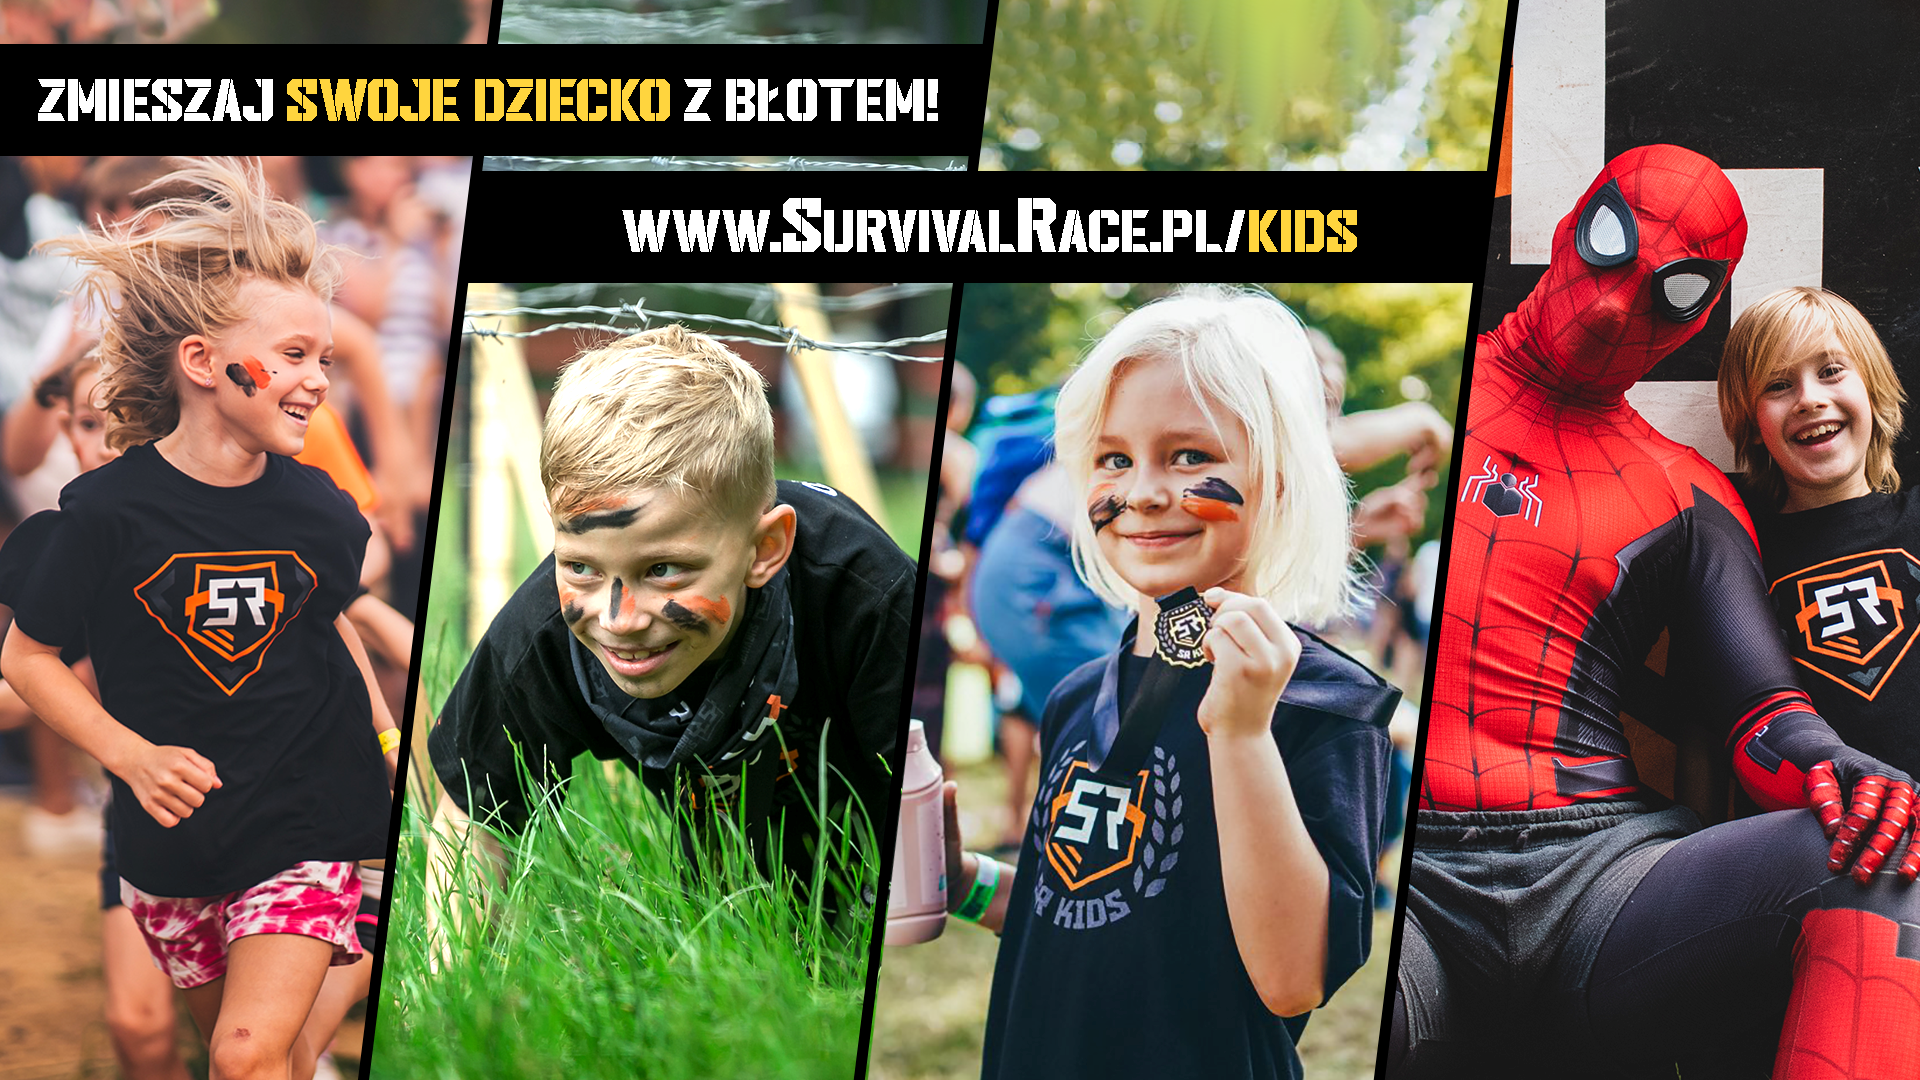 Survival Race Kids zawita do Wrocławia! Mamy zaproszenia!